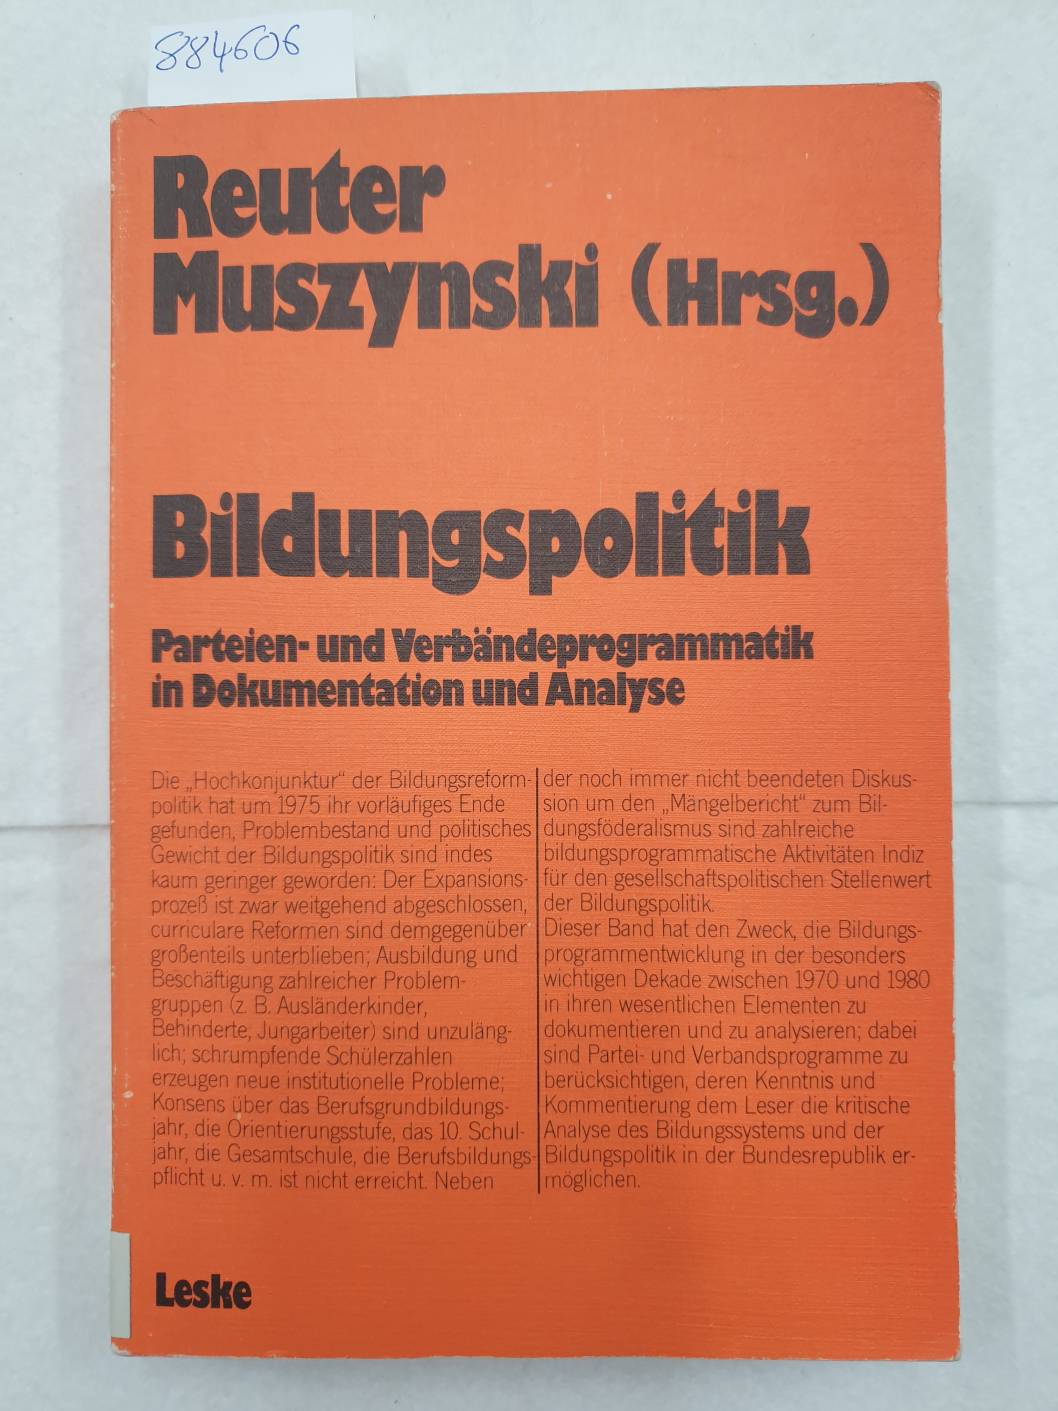 Bildungspolitik : Dokumentation u. Analyse. (= Schriften zur politischen Didaktik ; Bd. 13) - Reuter, Lutz R. und Bernhard Muszynski